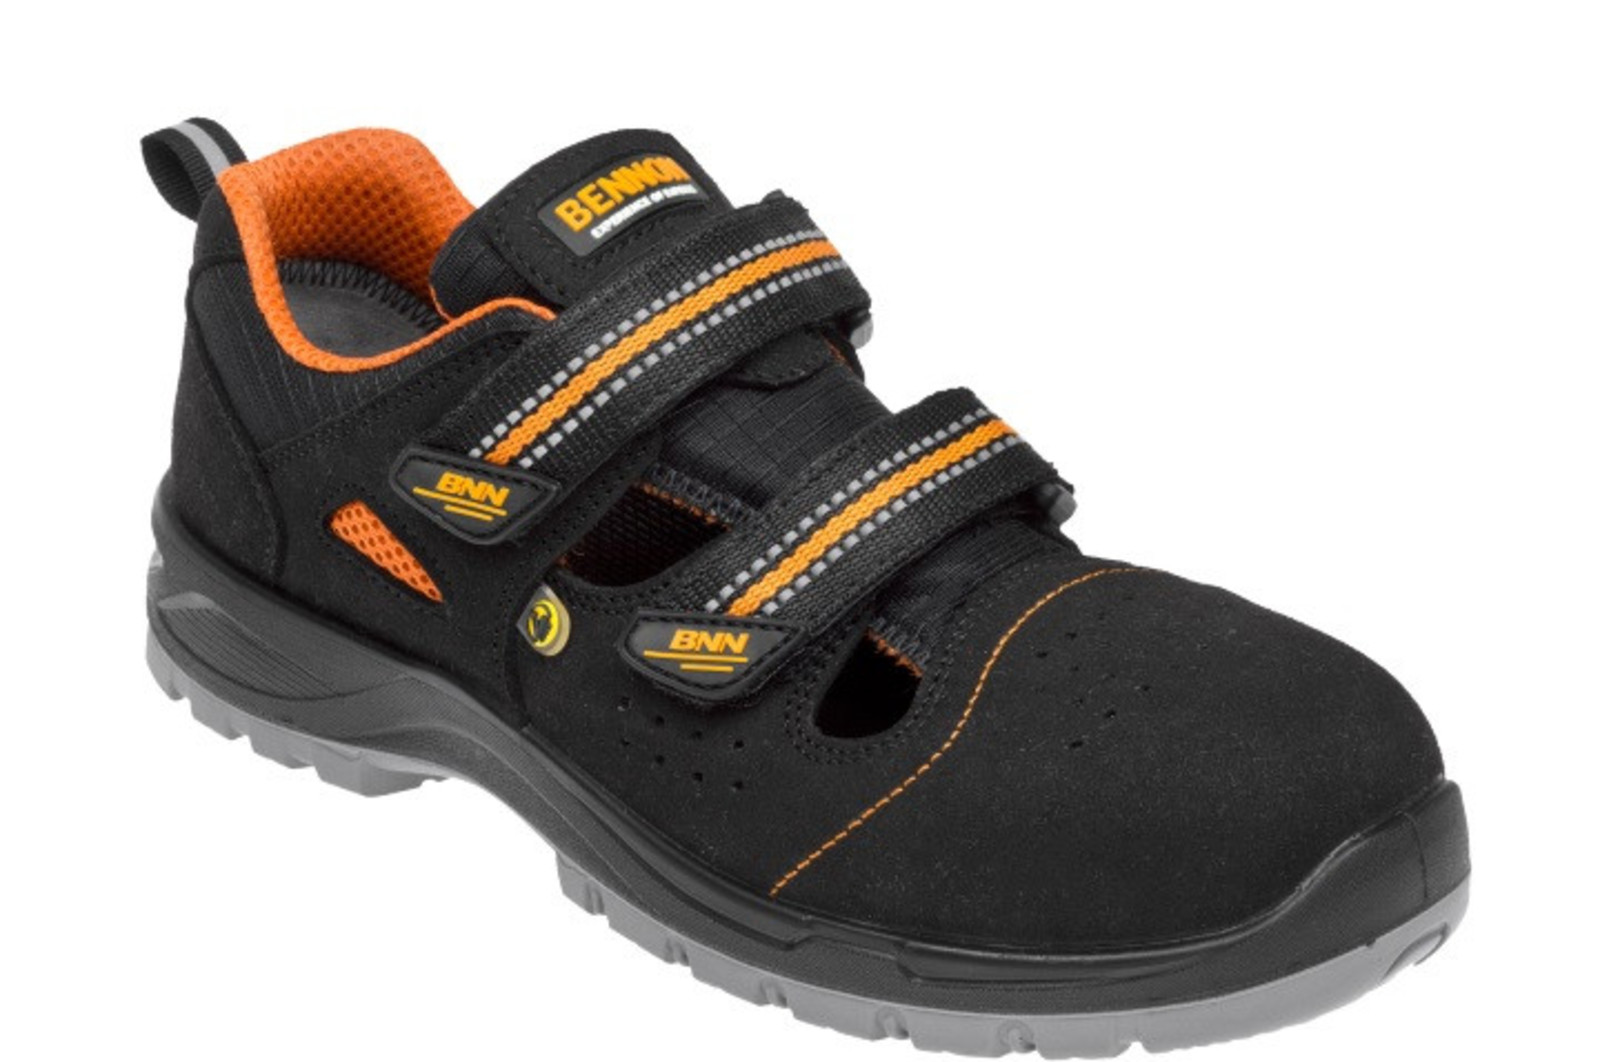 Bezpečnostné sandále Bennon Nux S1P ESD metal free - veľkosť: 43, farba: čierna